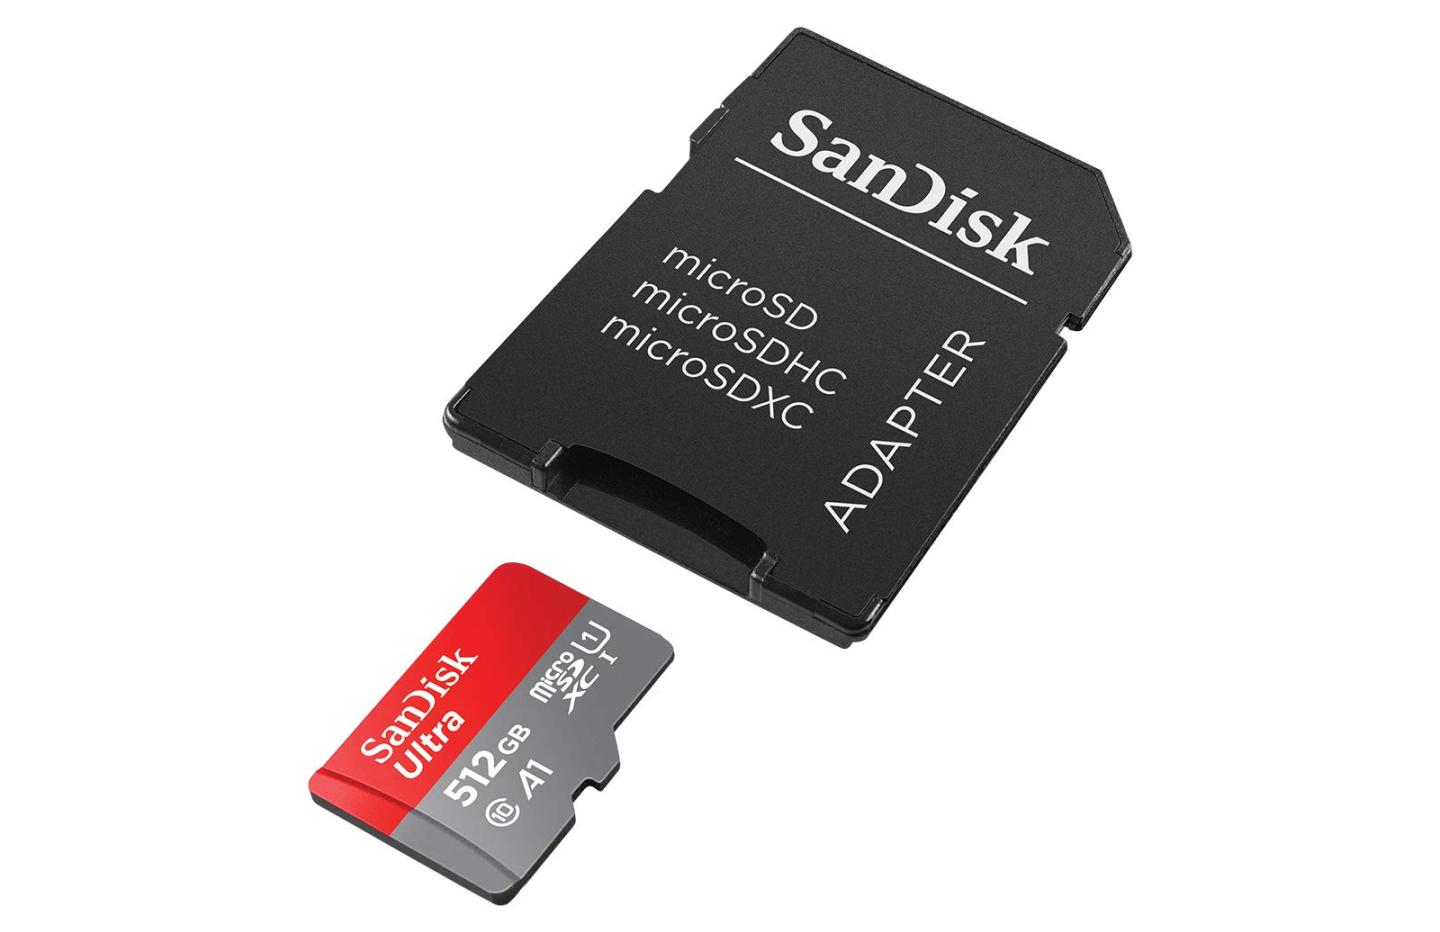 MicroSD : 512 Go de stockage à moitié prix avec cette carte de